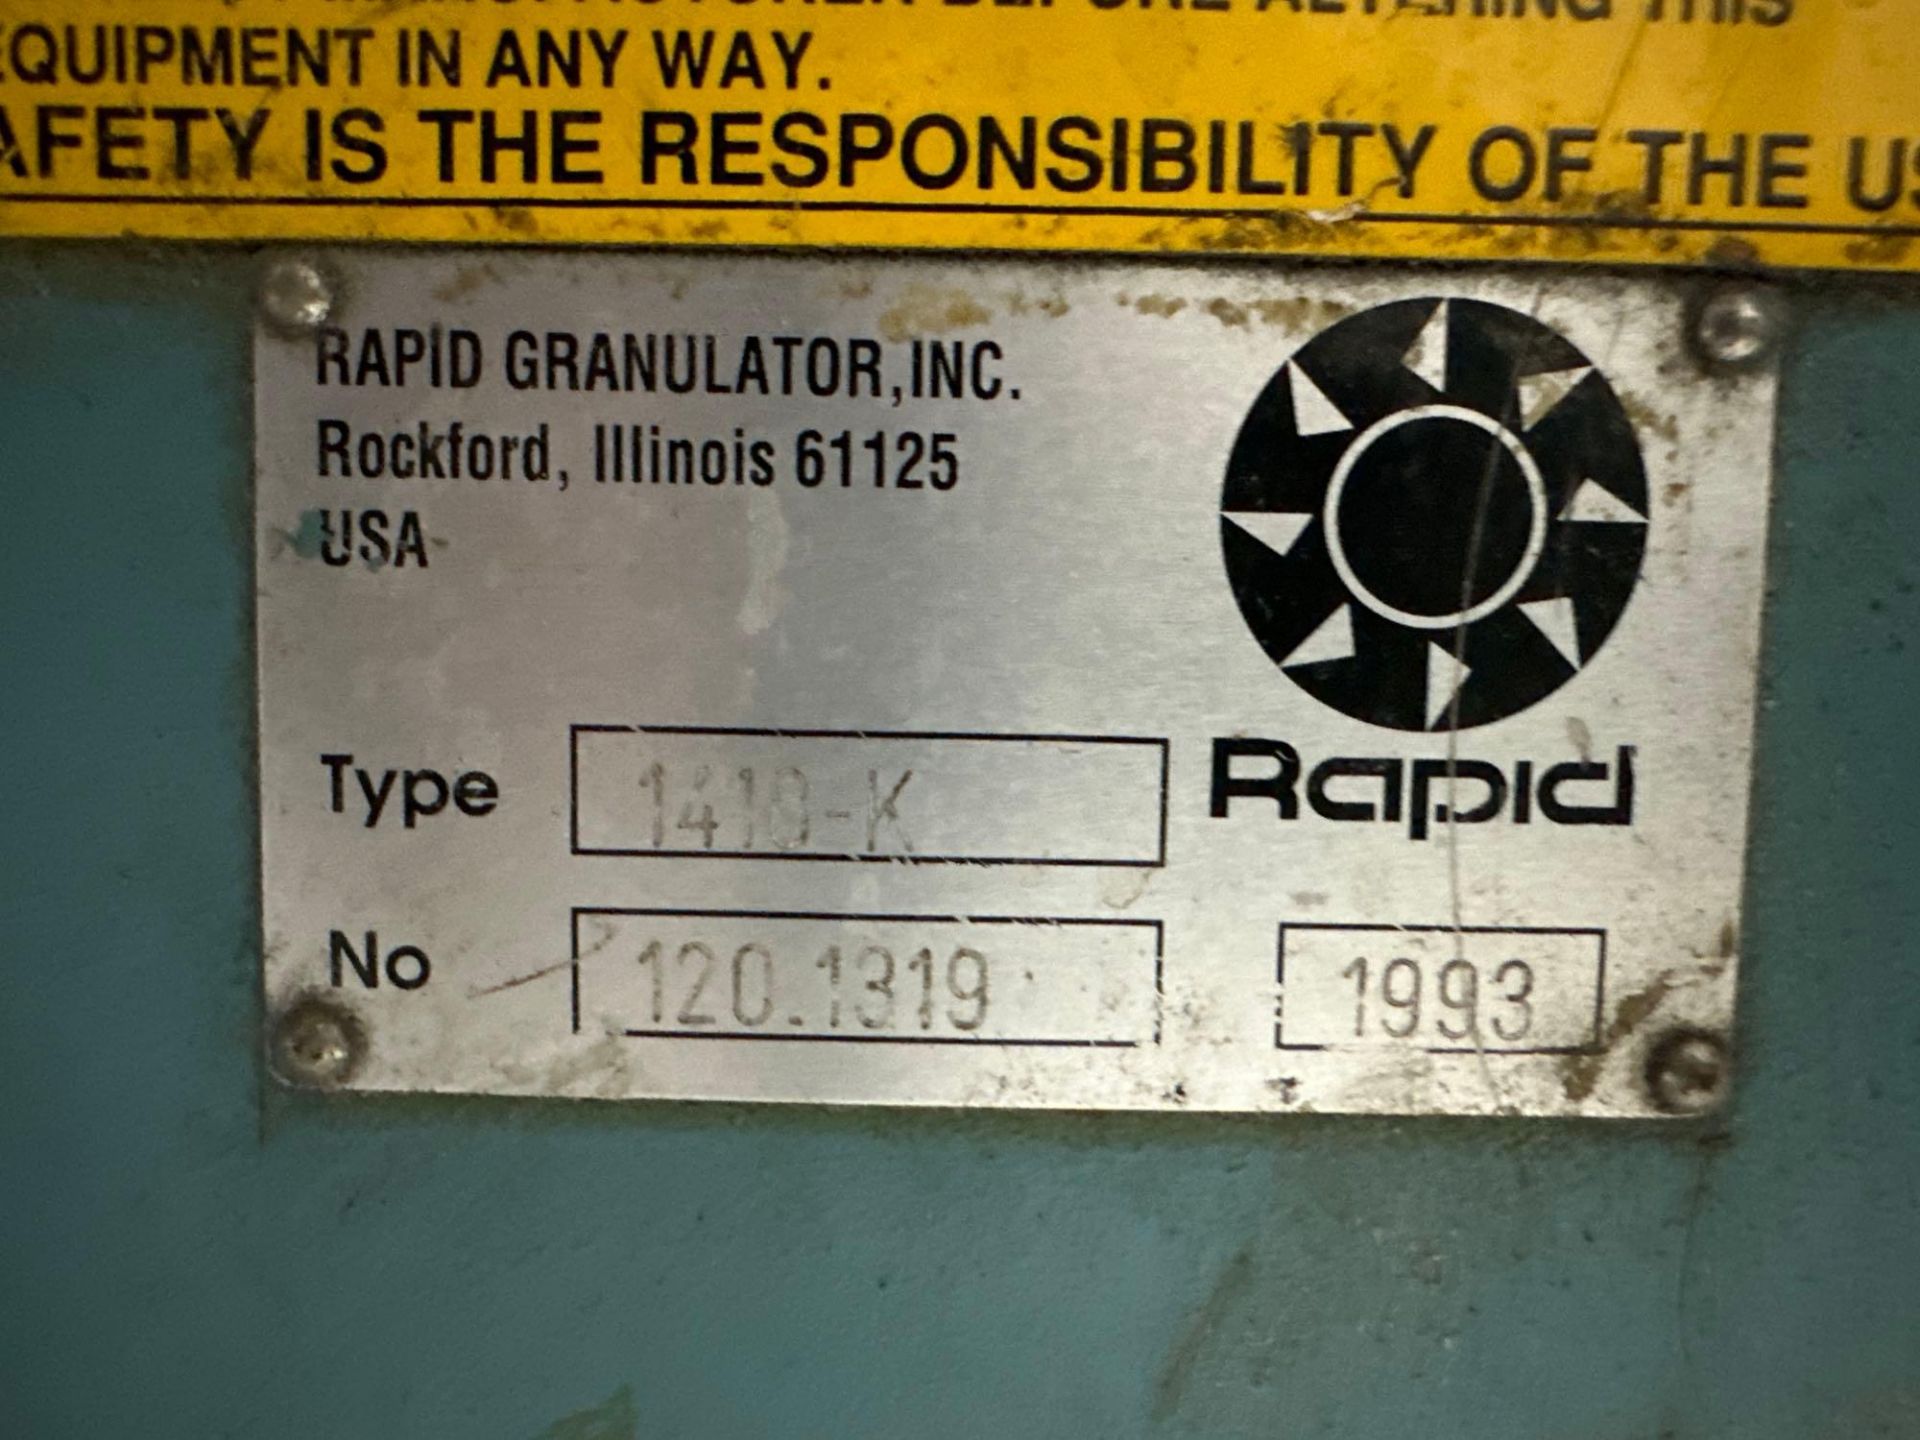 Rapid 1410K Material Granulator, s/n 120.1319, 1993 - Image 6 of 6